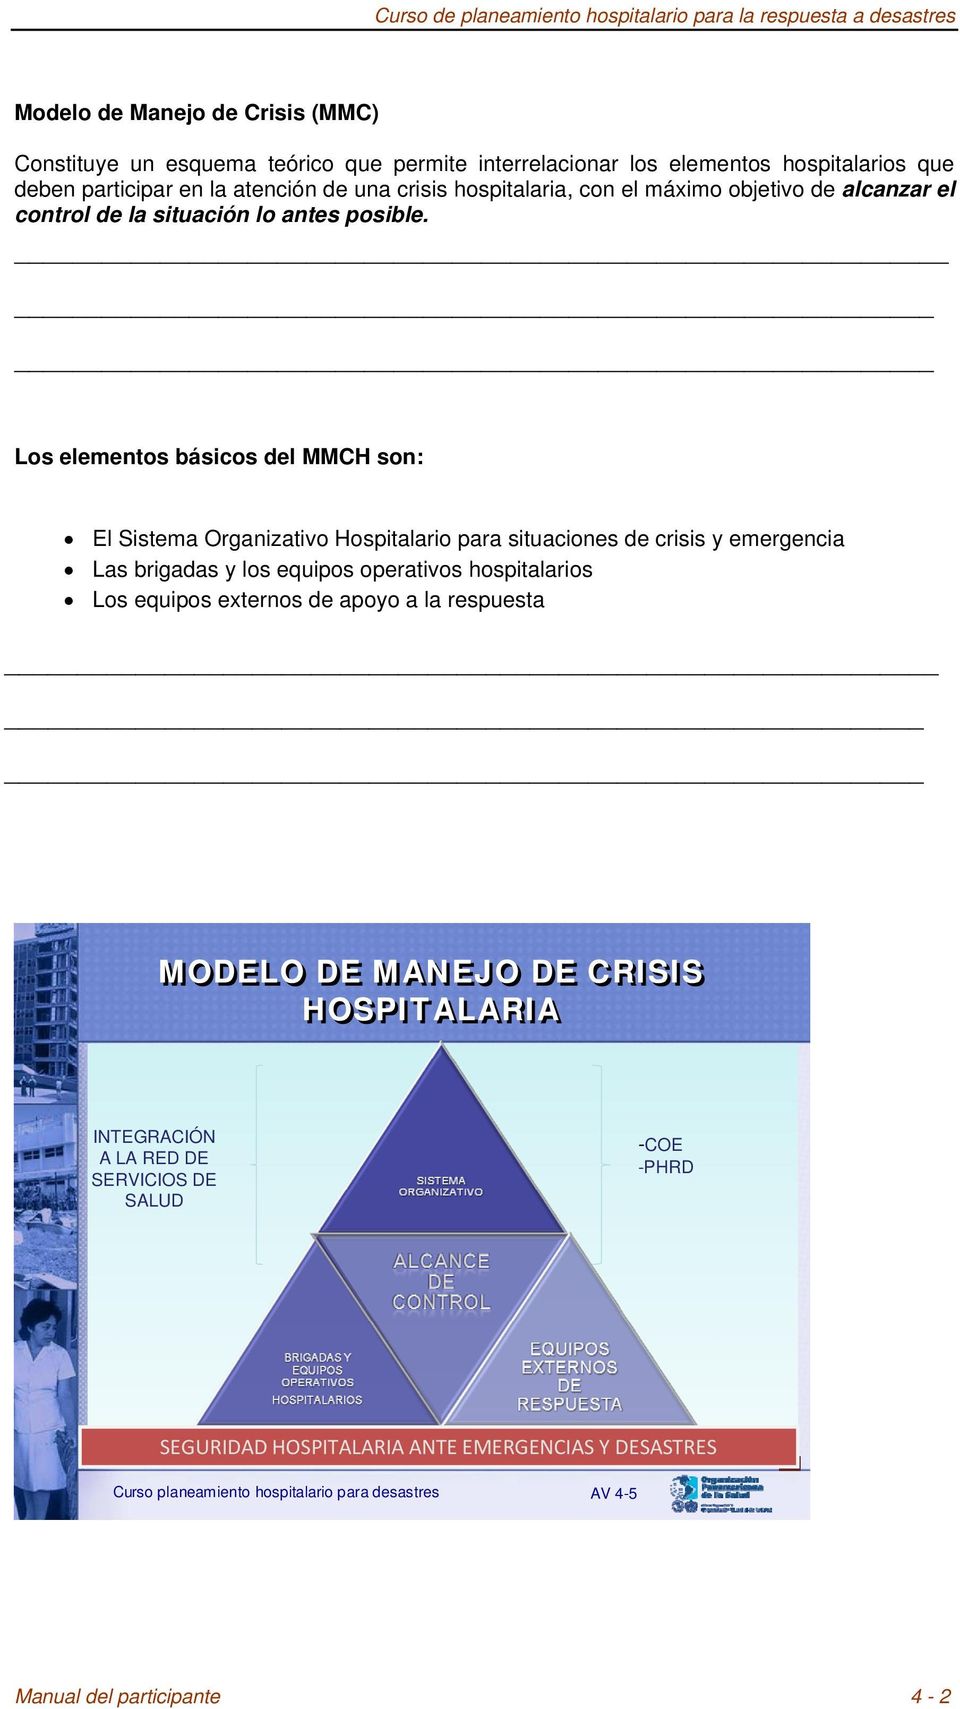 Los elementos básicos del MMCH son: El Sistema Organizativo Hospitalario para situaciones de crisis y emergencia Las brigadas y los equipos operativos hospitalarios Los